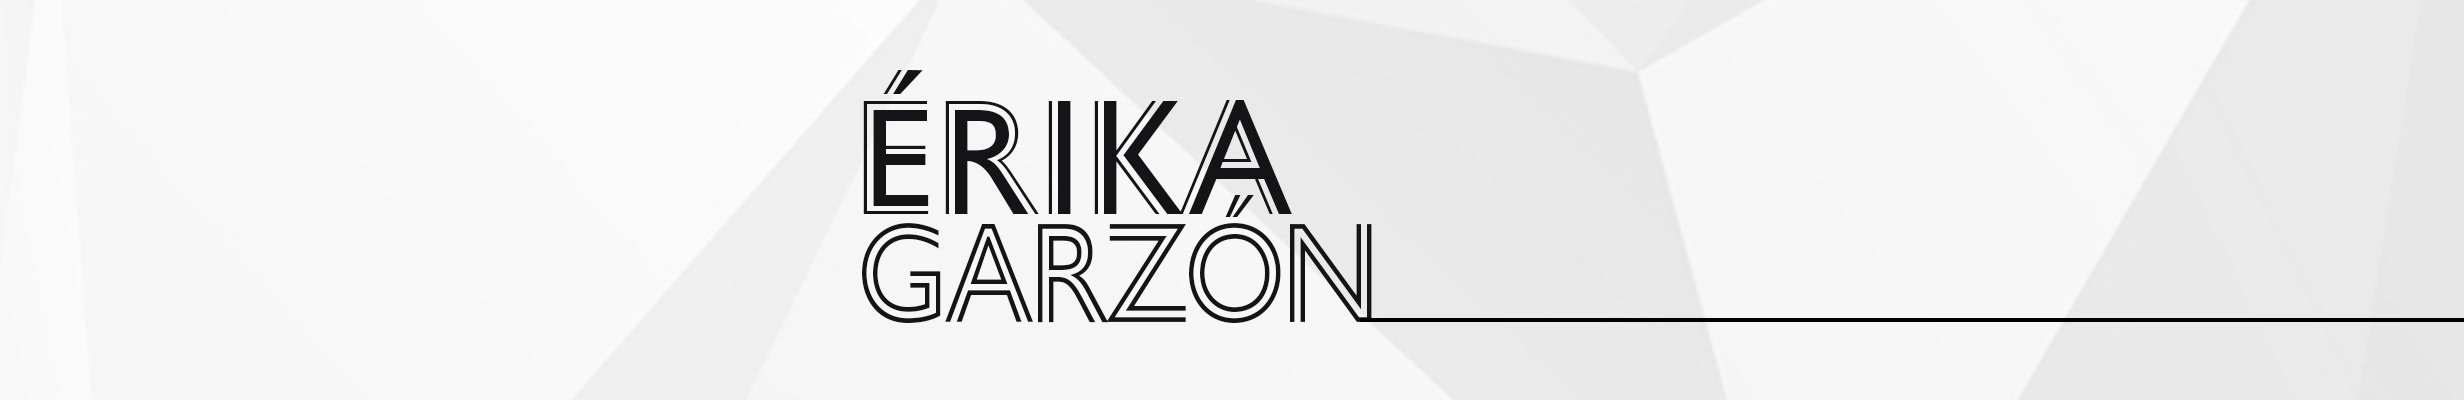 Erika Garzon's profile banner